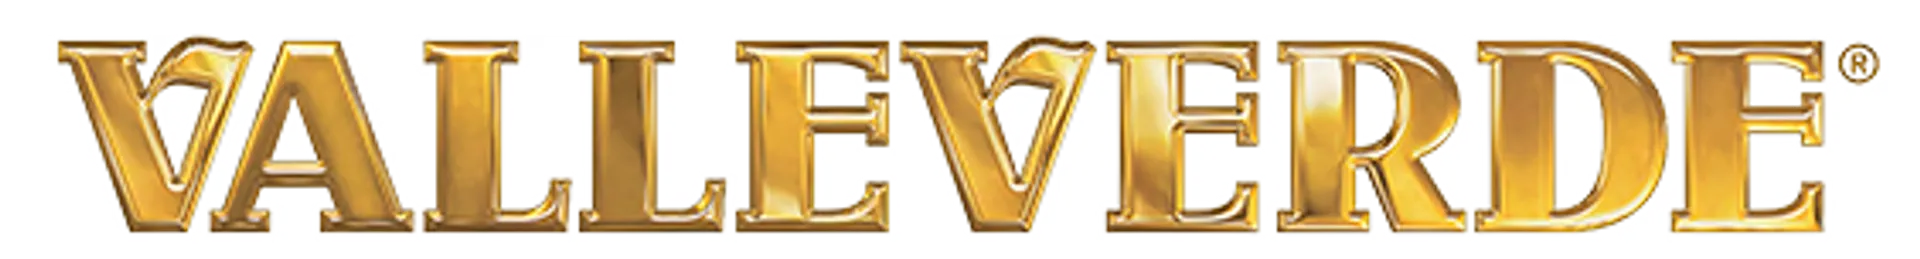 VALLEVERDE logo del volantino attuale